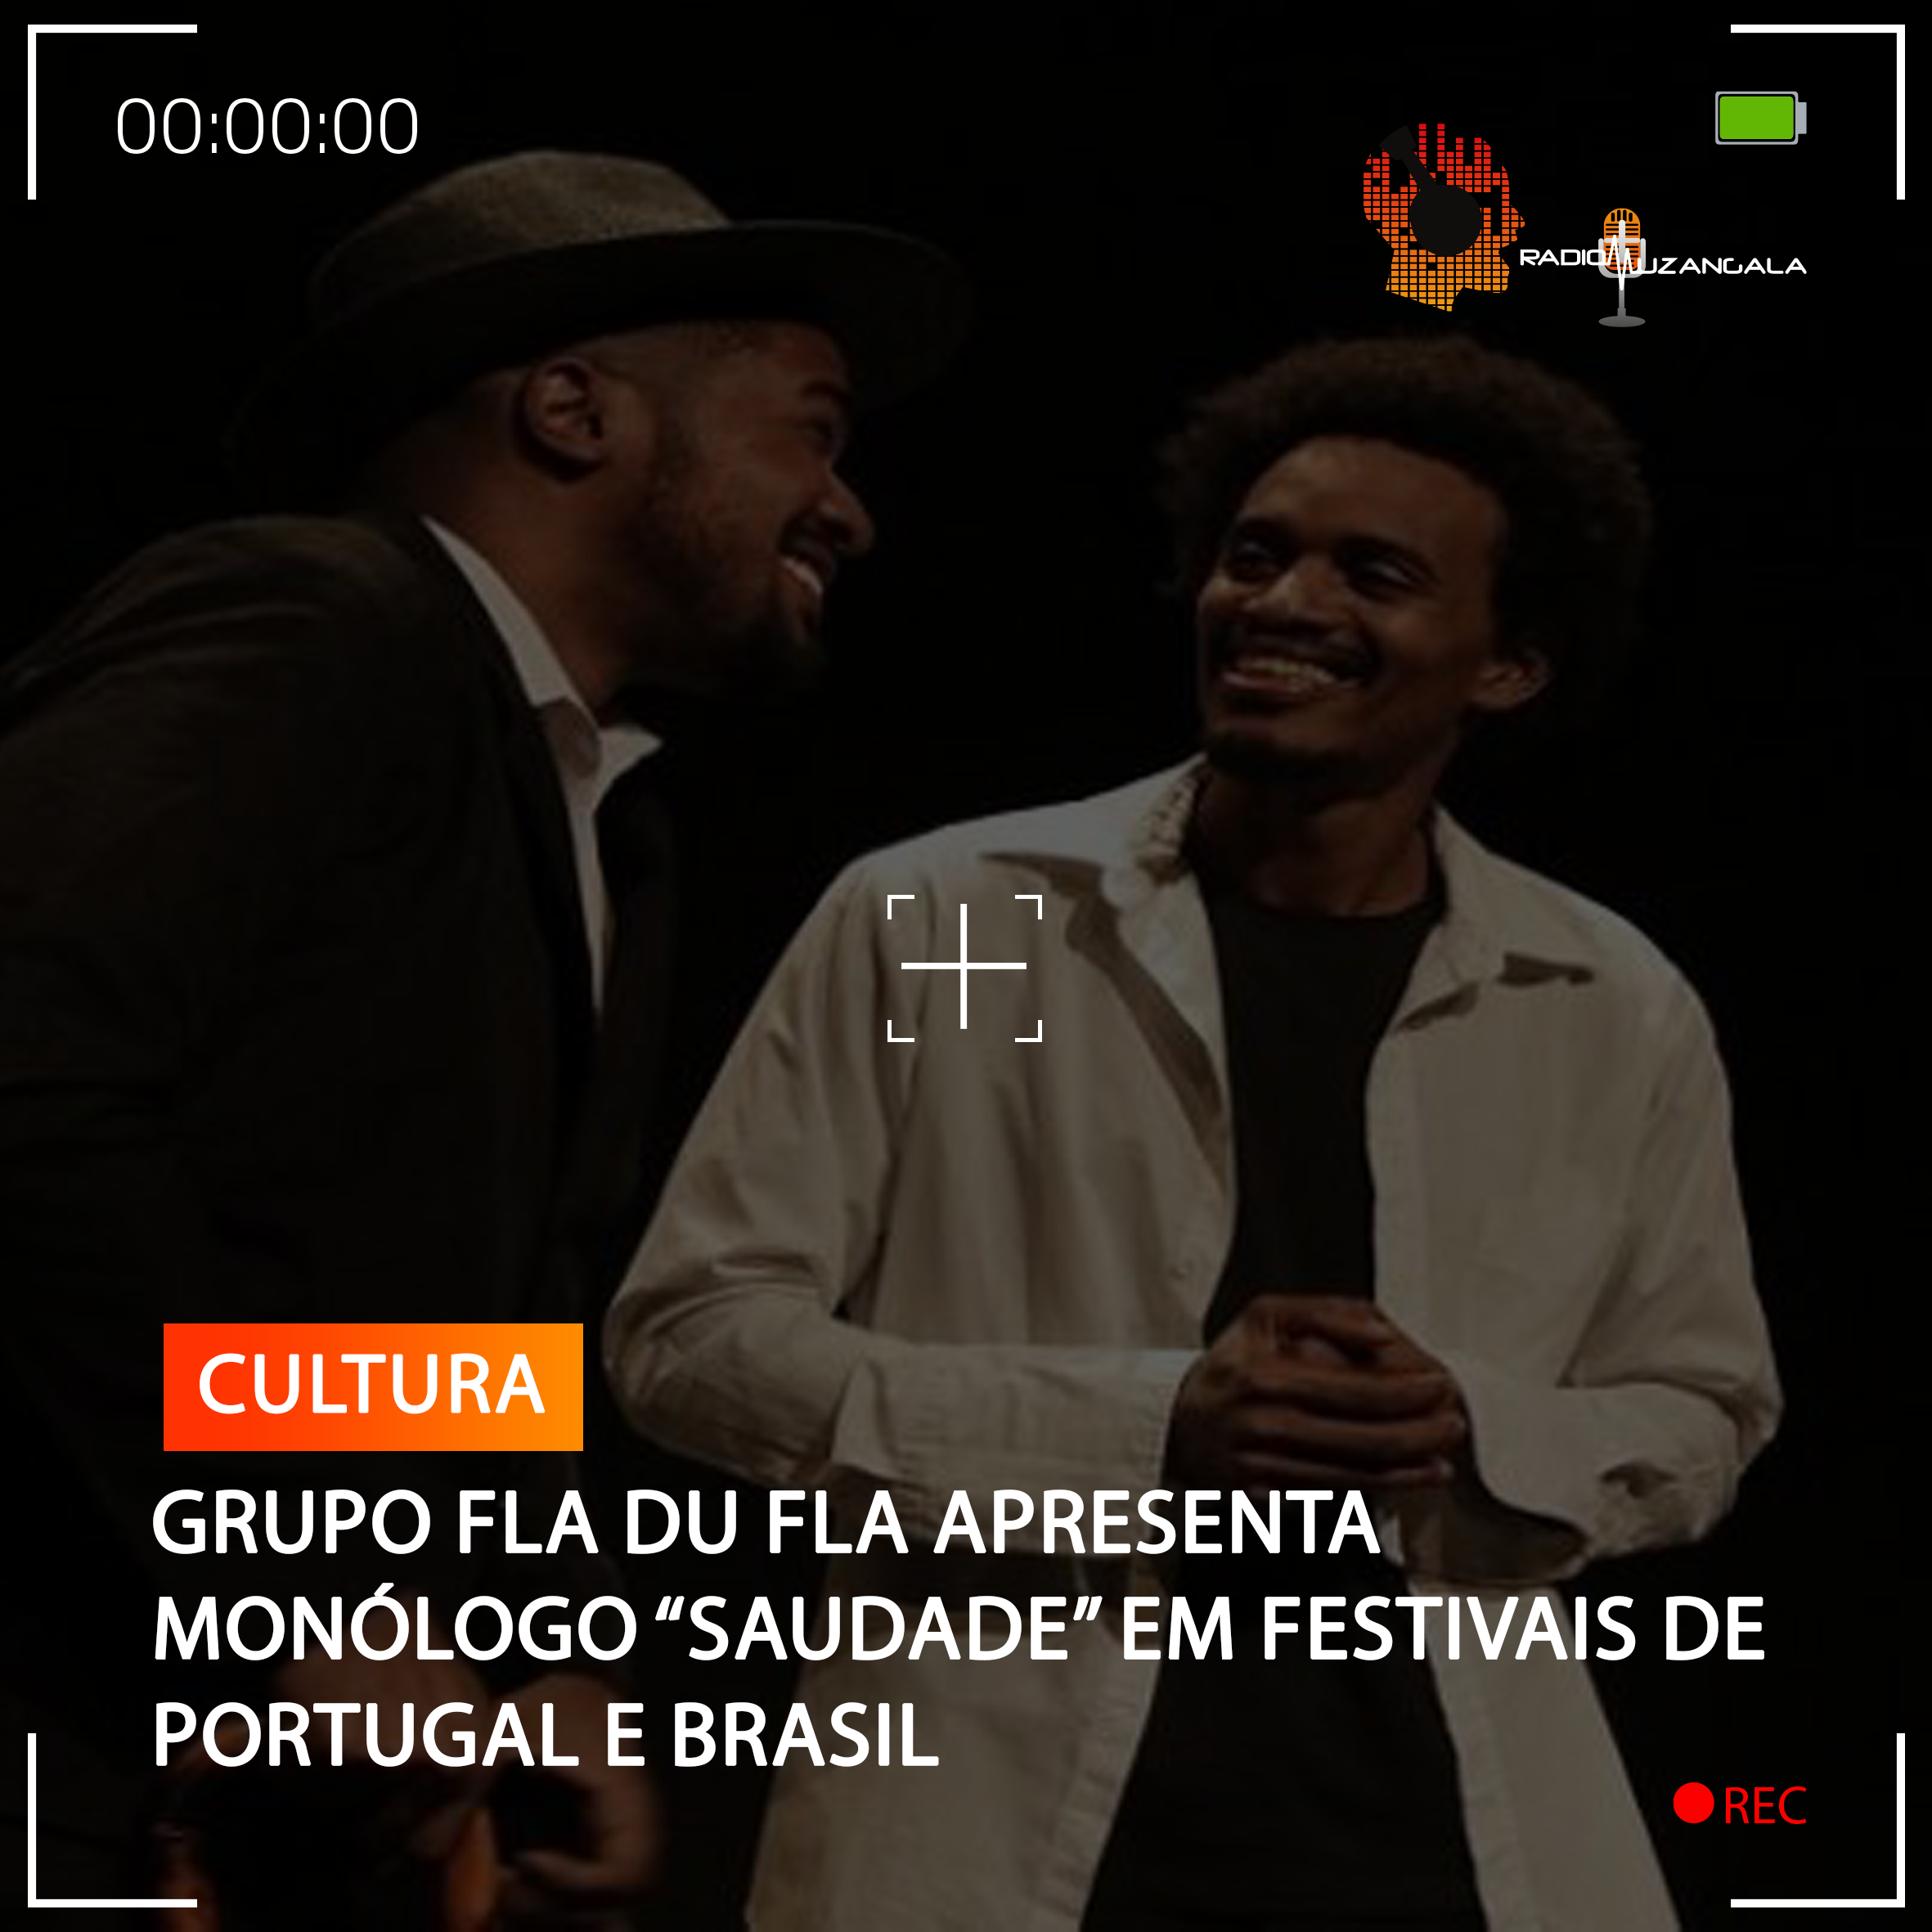  GRUPO FLA DU FLA APRESENTA MONÓLOGO “SAUDADE” EM FESTIVAIS DE PORTUGAL E BRASIL